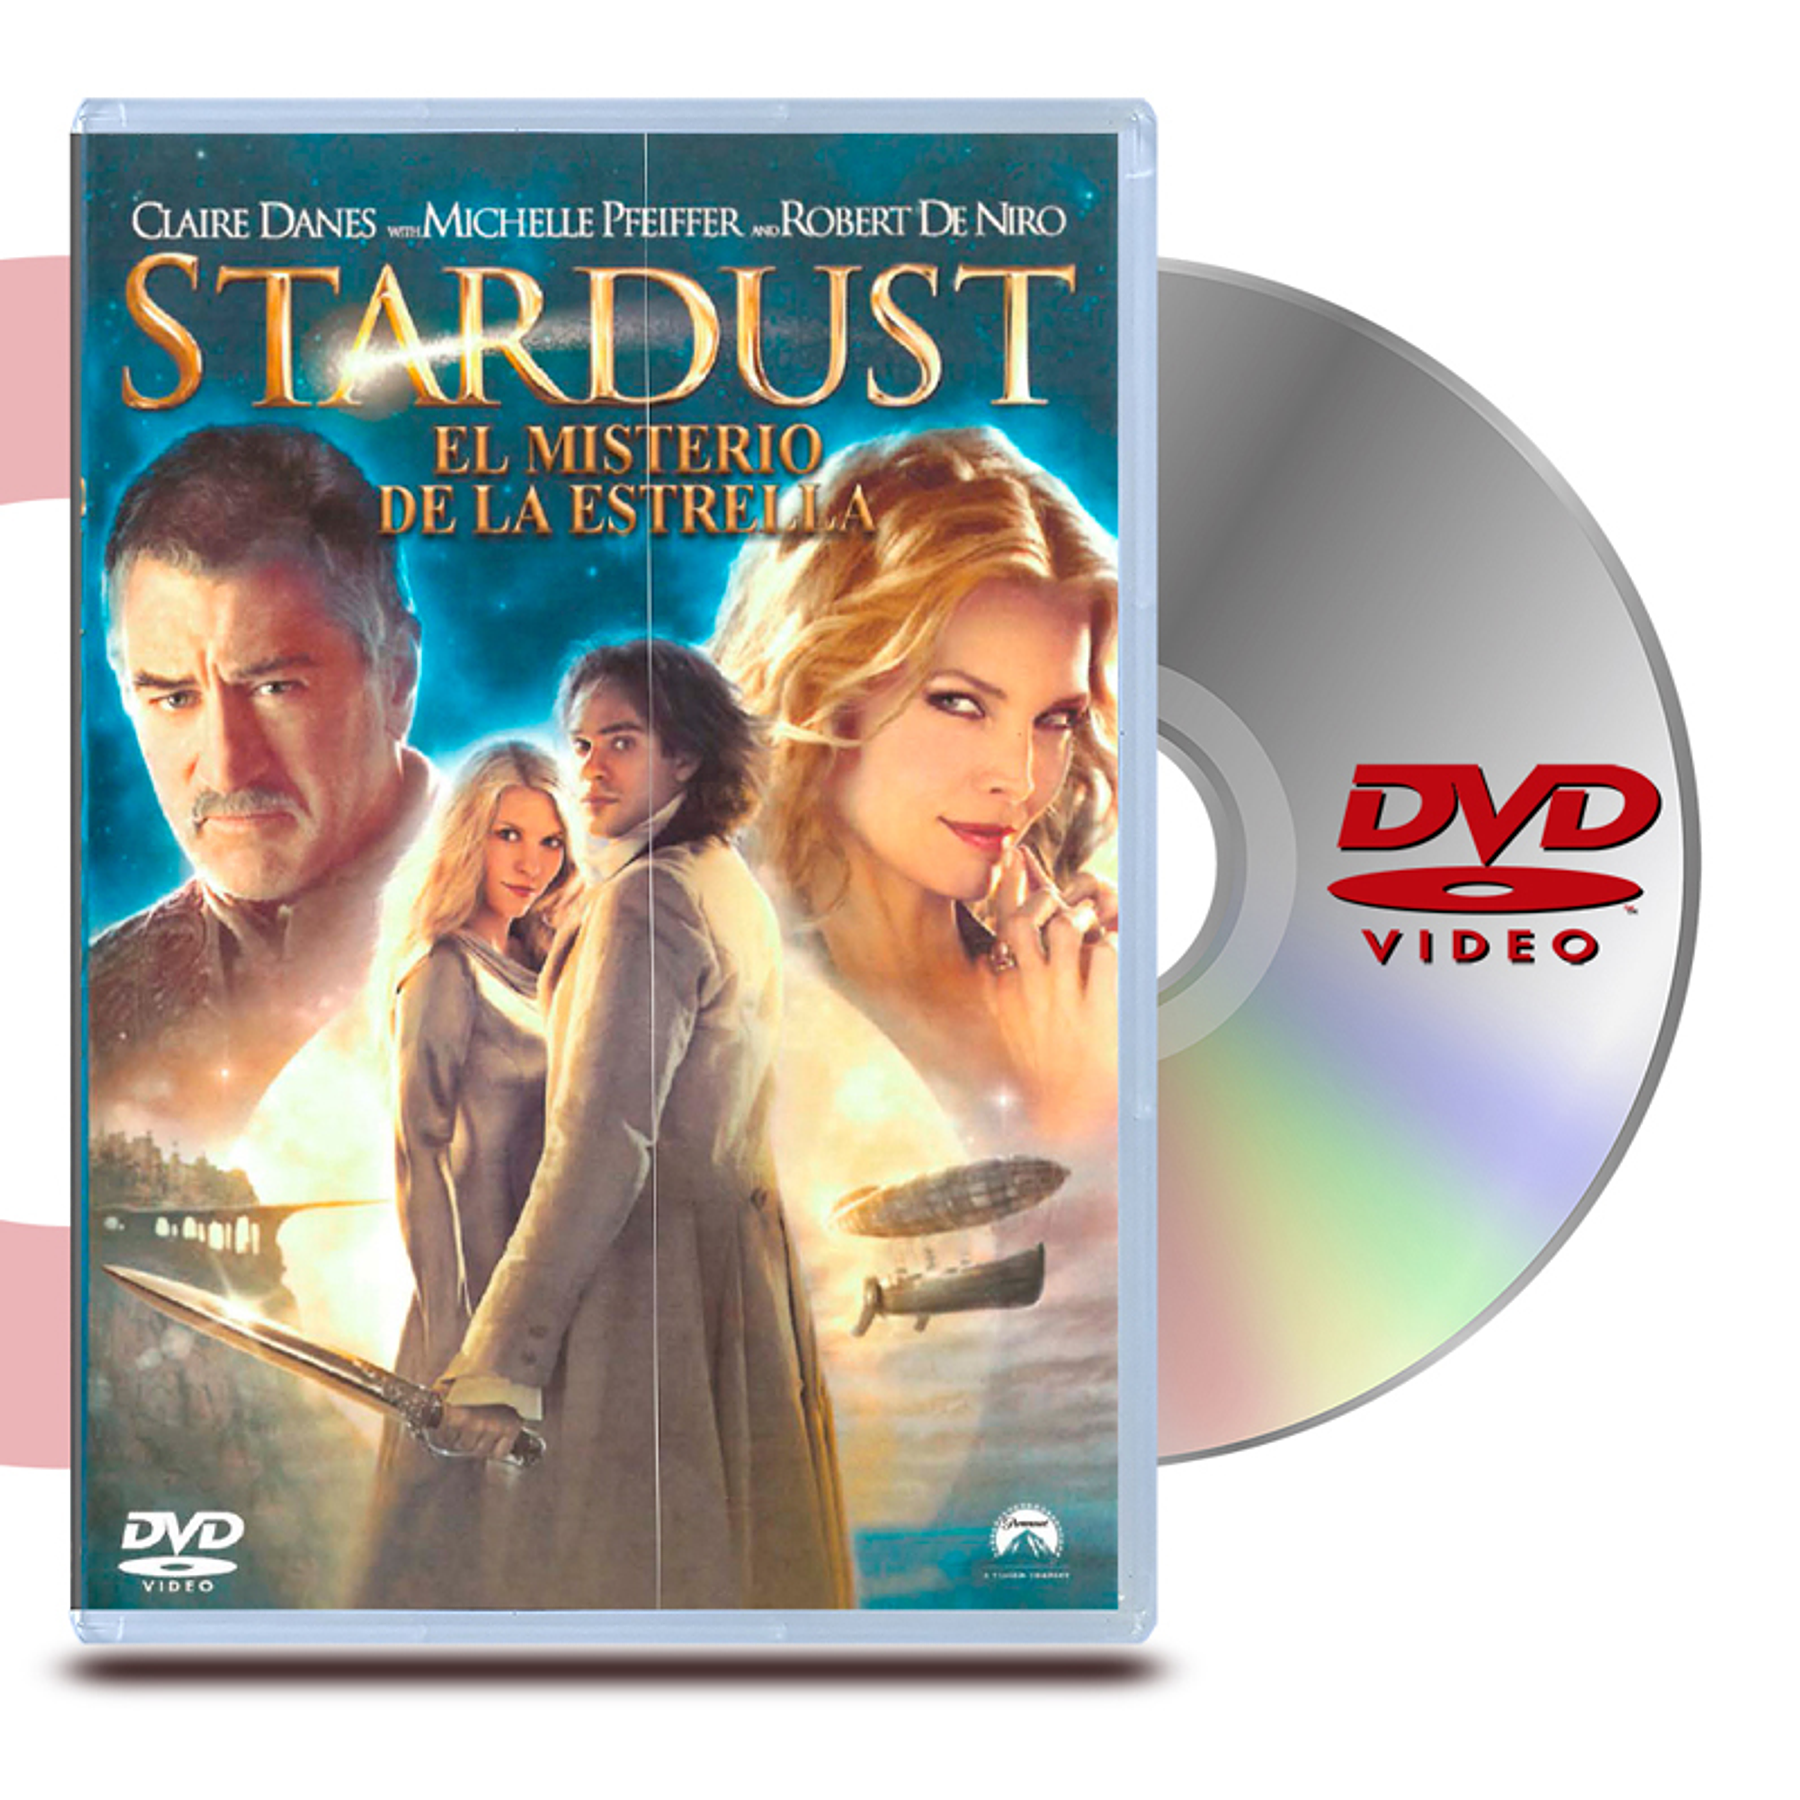 DVD STARDUST EL MISTERIO DE LA ESTRELLA